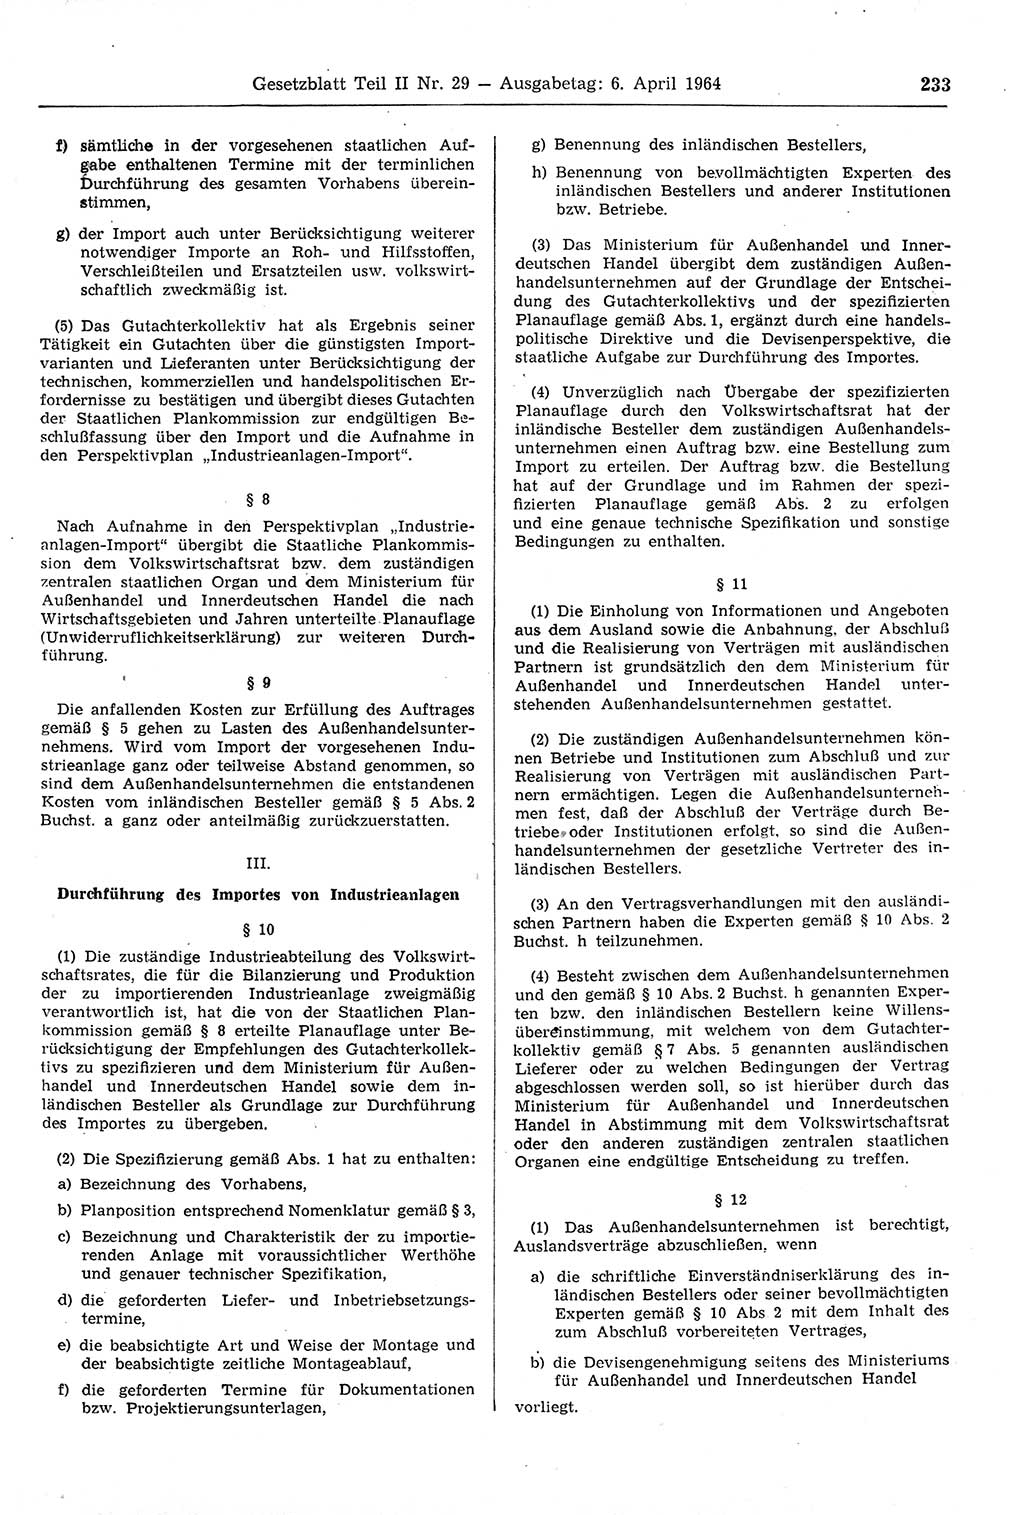 Gesetzblatt (GBl.) der Deutschen Demokratischen Republik (DDR) Teil ⅠⅠ 1964, Seite 233 (GBl. DDR ⅠⅠ 1964, S. 233)